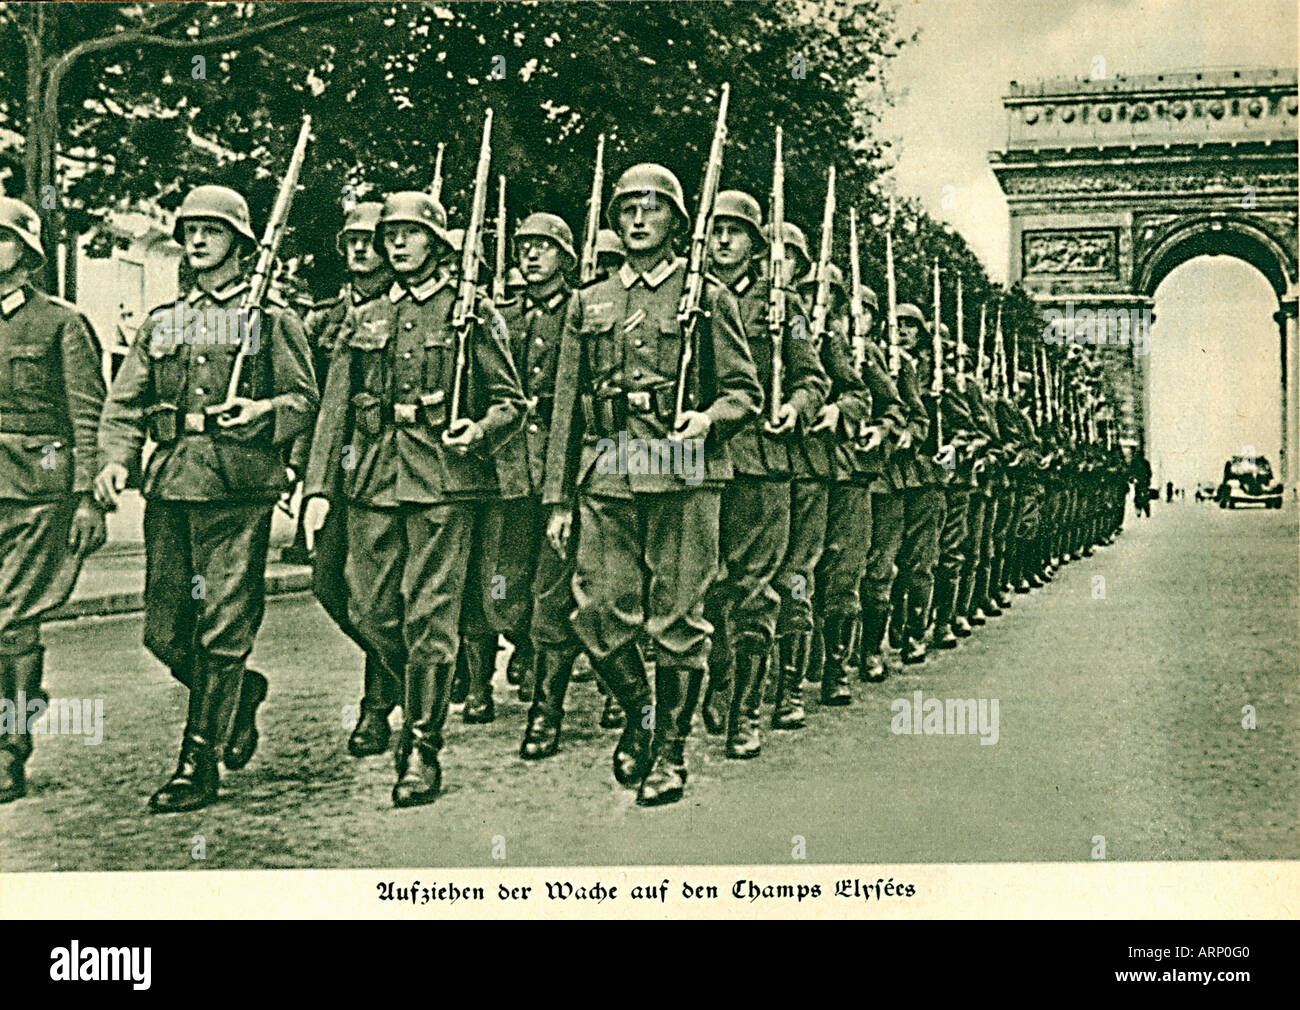 Les troupes allemandes dans les Champs Elysées 1940 Photo de propagande de la Wehrmacht marchant à Paris Banque D'Images